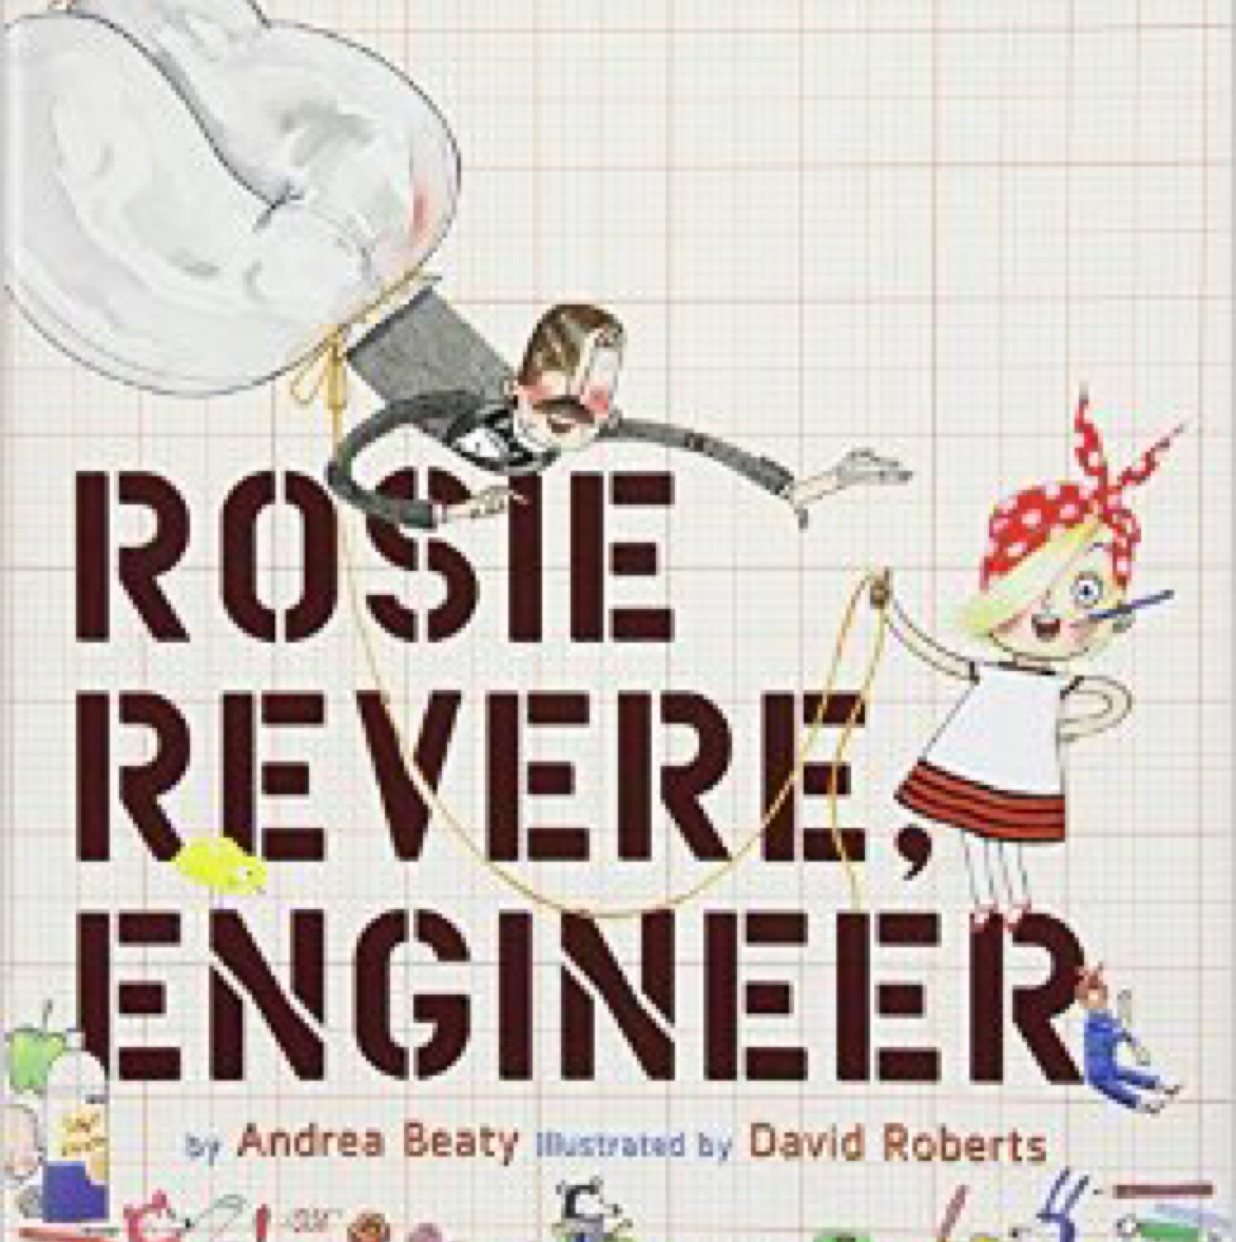 Nov 16, 2016 22:10 Rosie Revere, Engineer